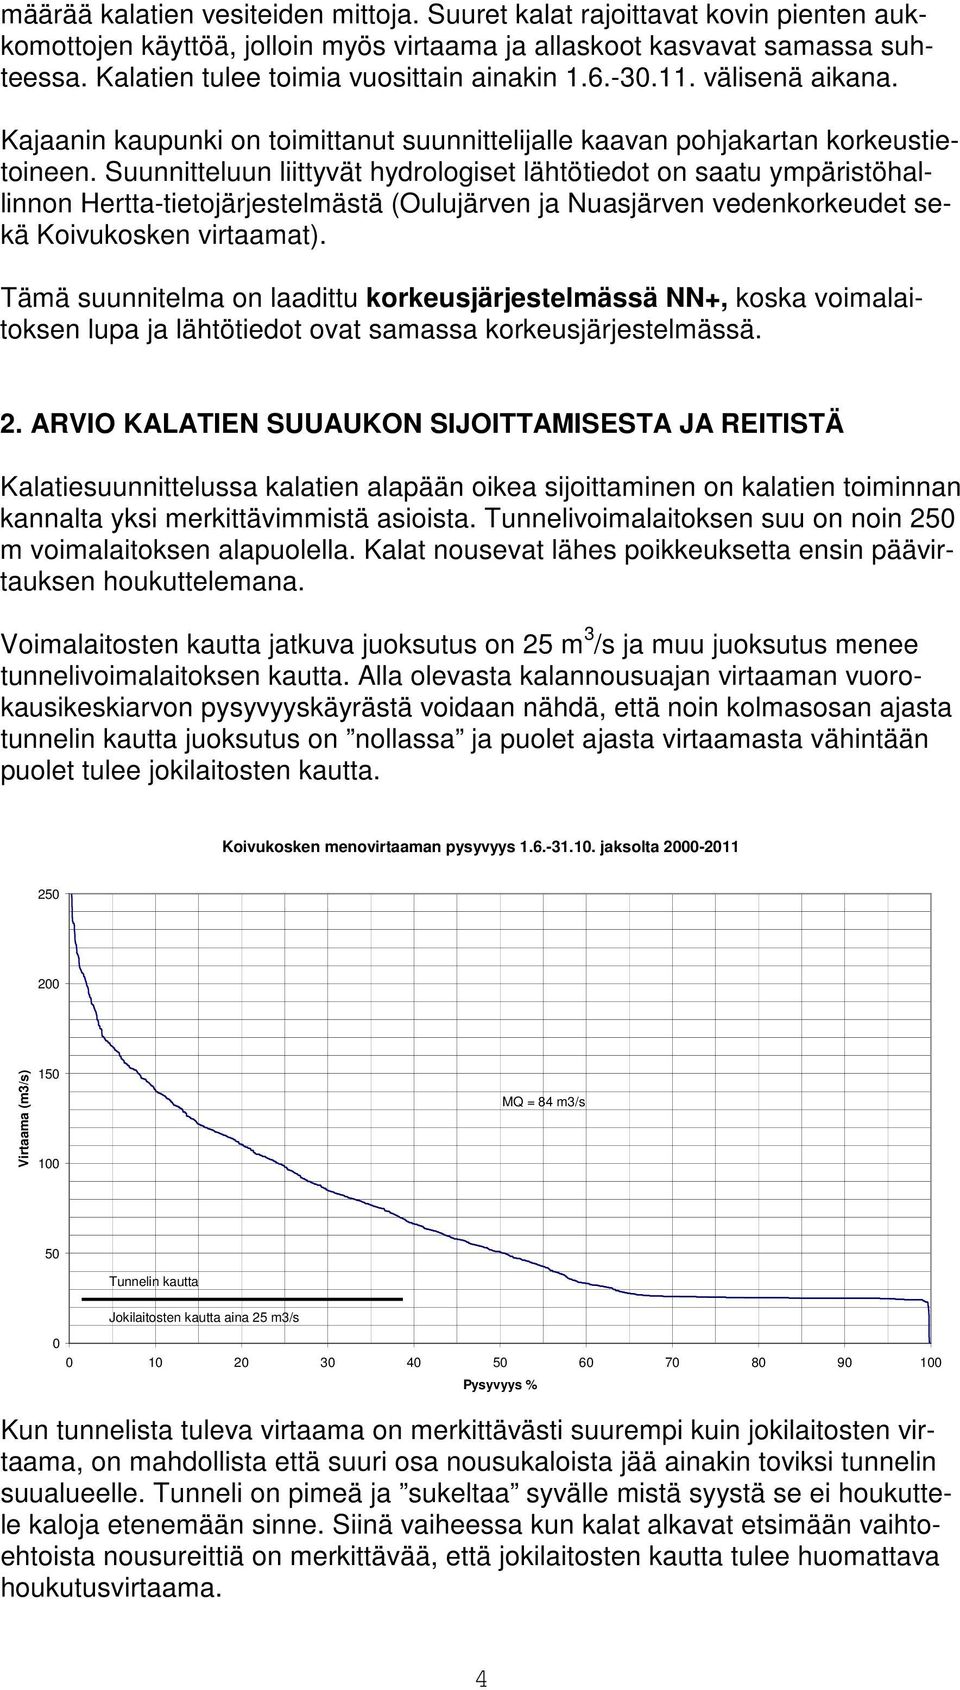 Suunnitteluun liittyvät hydrologiset lähtötiedot on saatu ympäristöhallinnon Hertta-tietojärjestelmästä (Oulujärven ja Nuasjärven vedenkorkeudet sekä Koivukosken virtaamat).